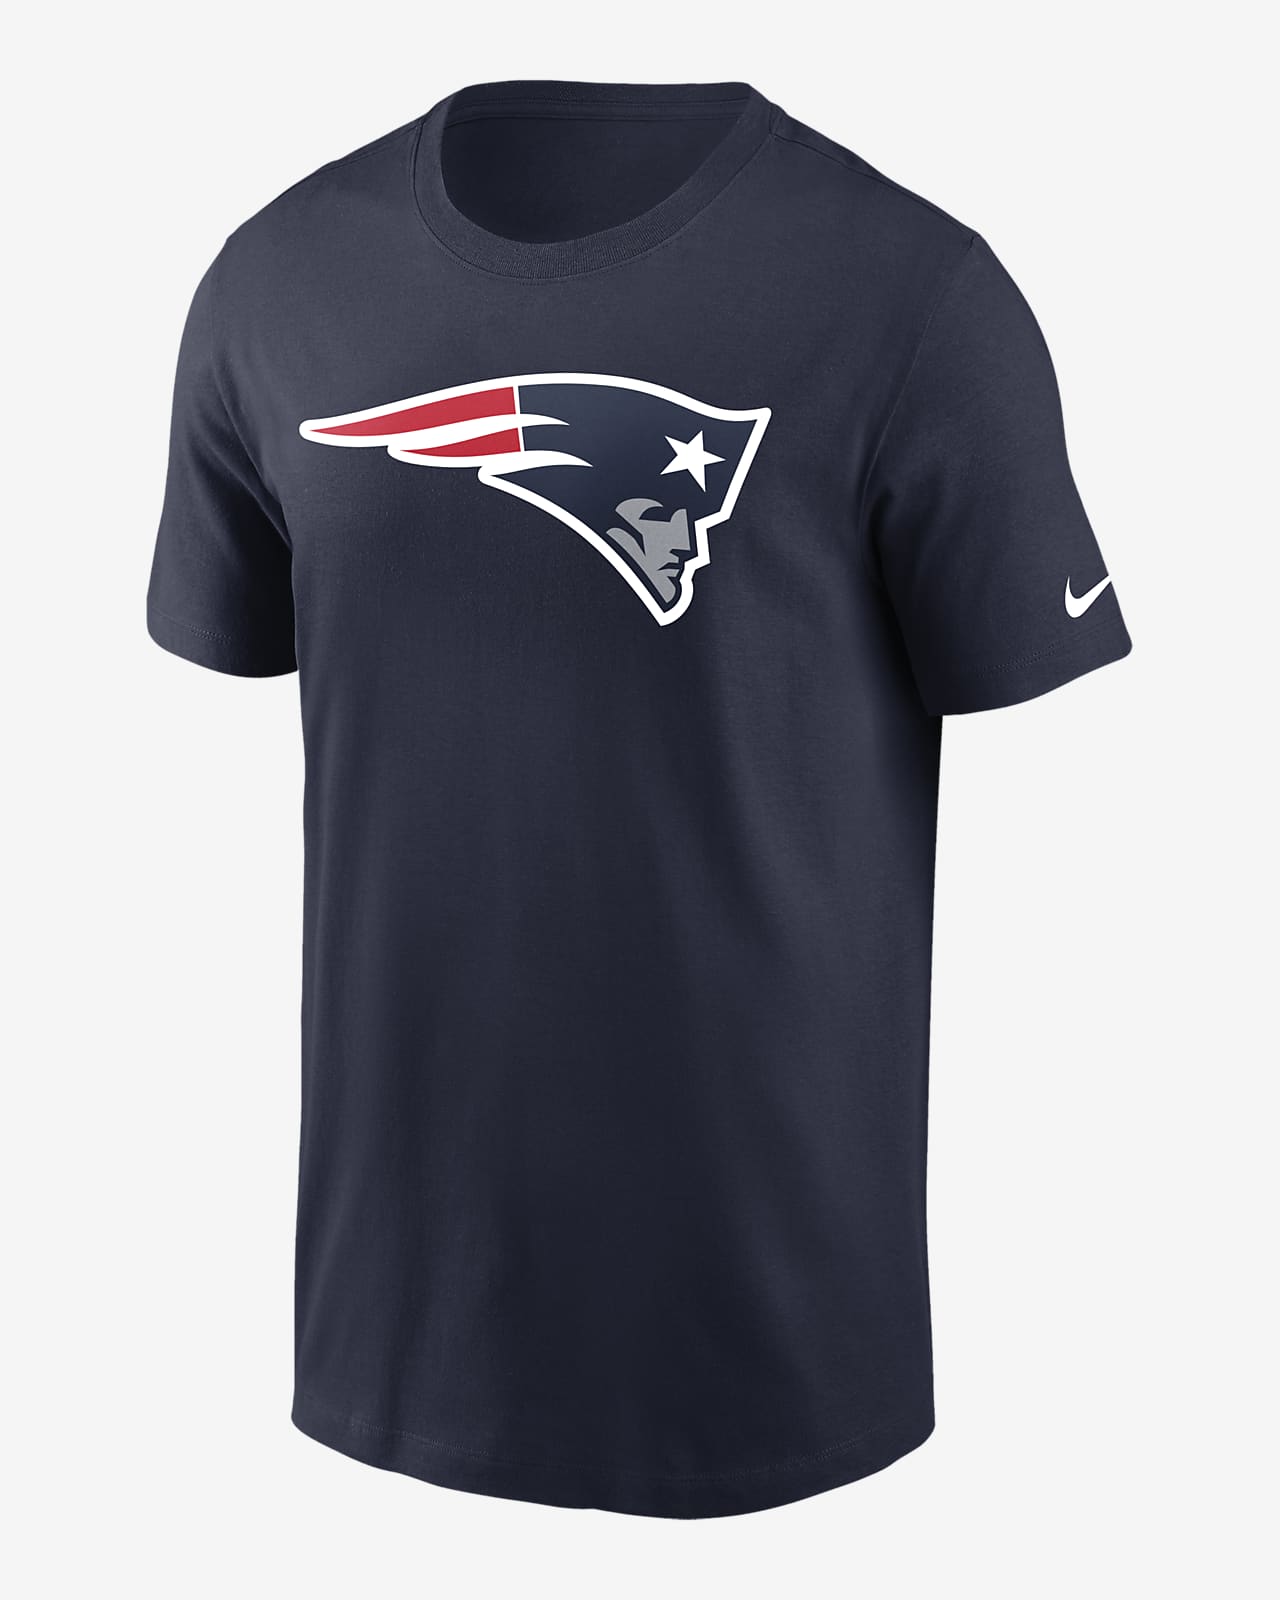 Playera para hombre Nike Logo Essential (NFL New England Patriots)